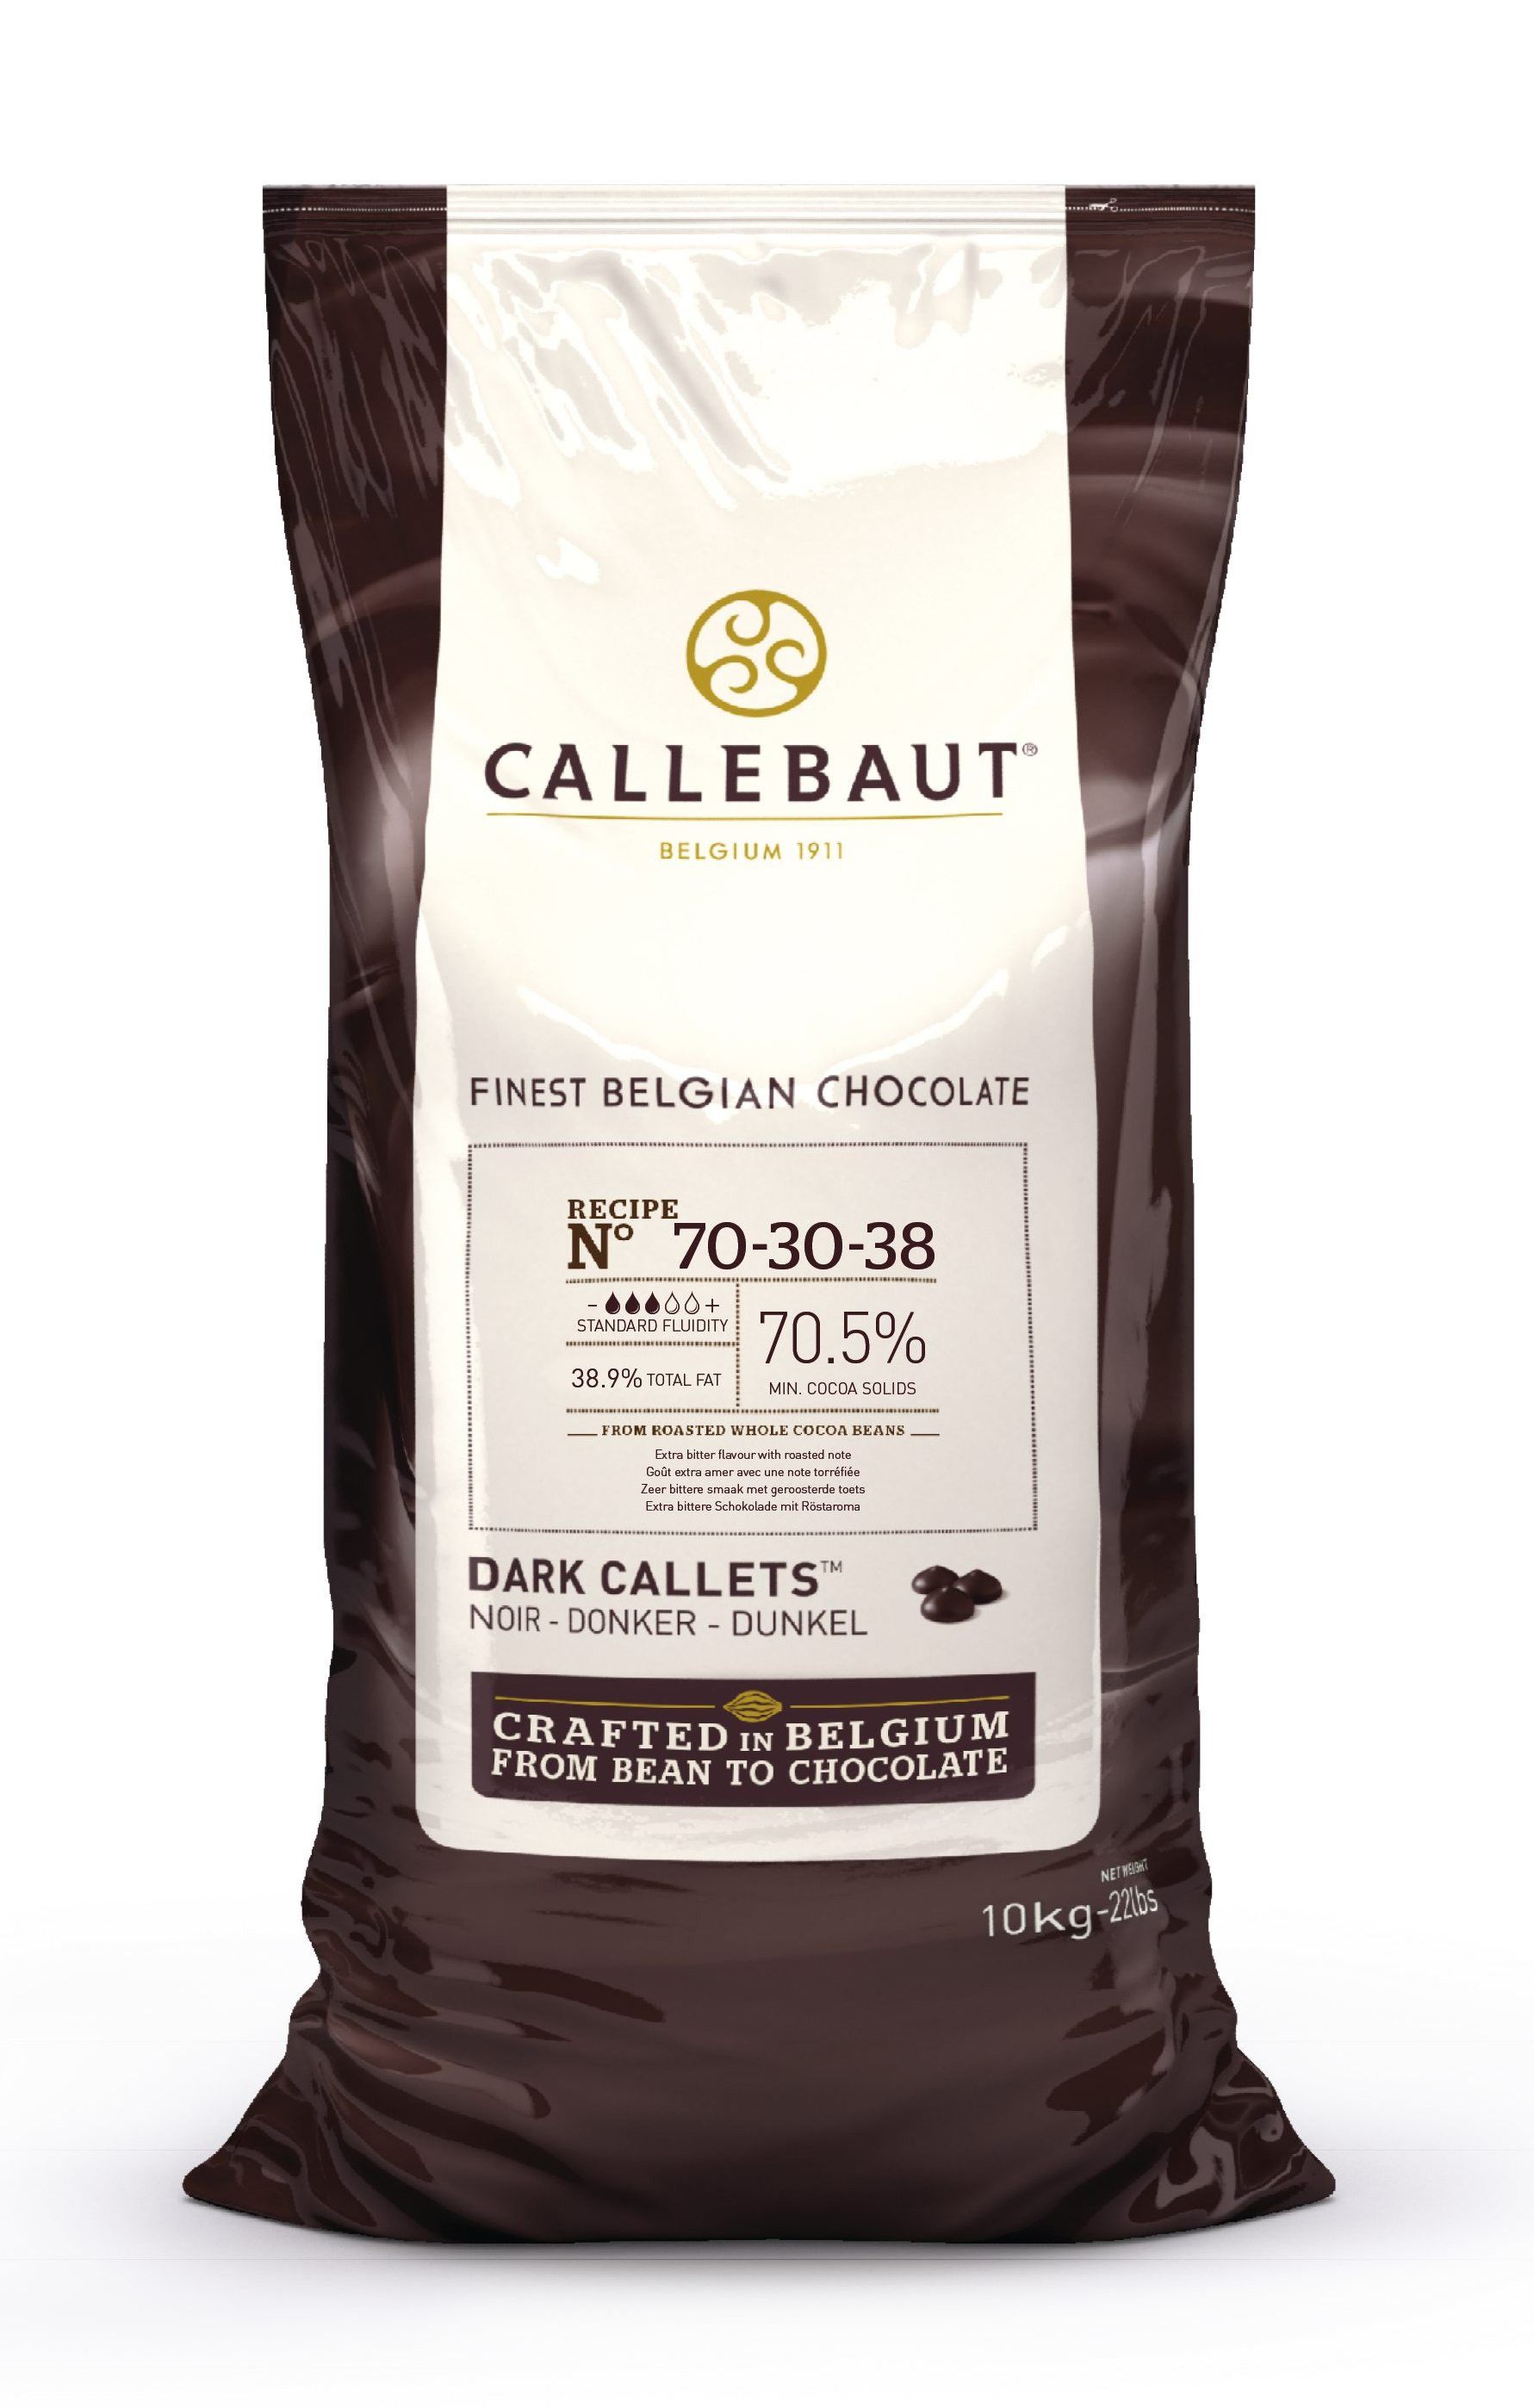 ⋗ Шоколад бельгийский Callebaut 70-30-38  чёрный 70,5% в дисках, 10кг купить в Украине ➛ CakeShop.com.ua, фото